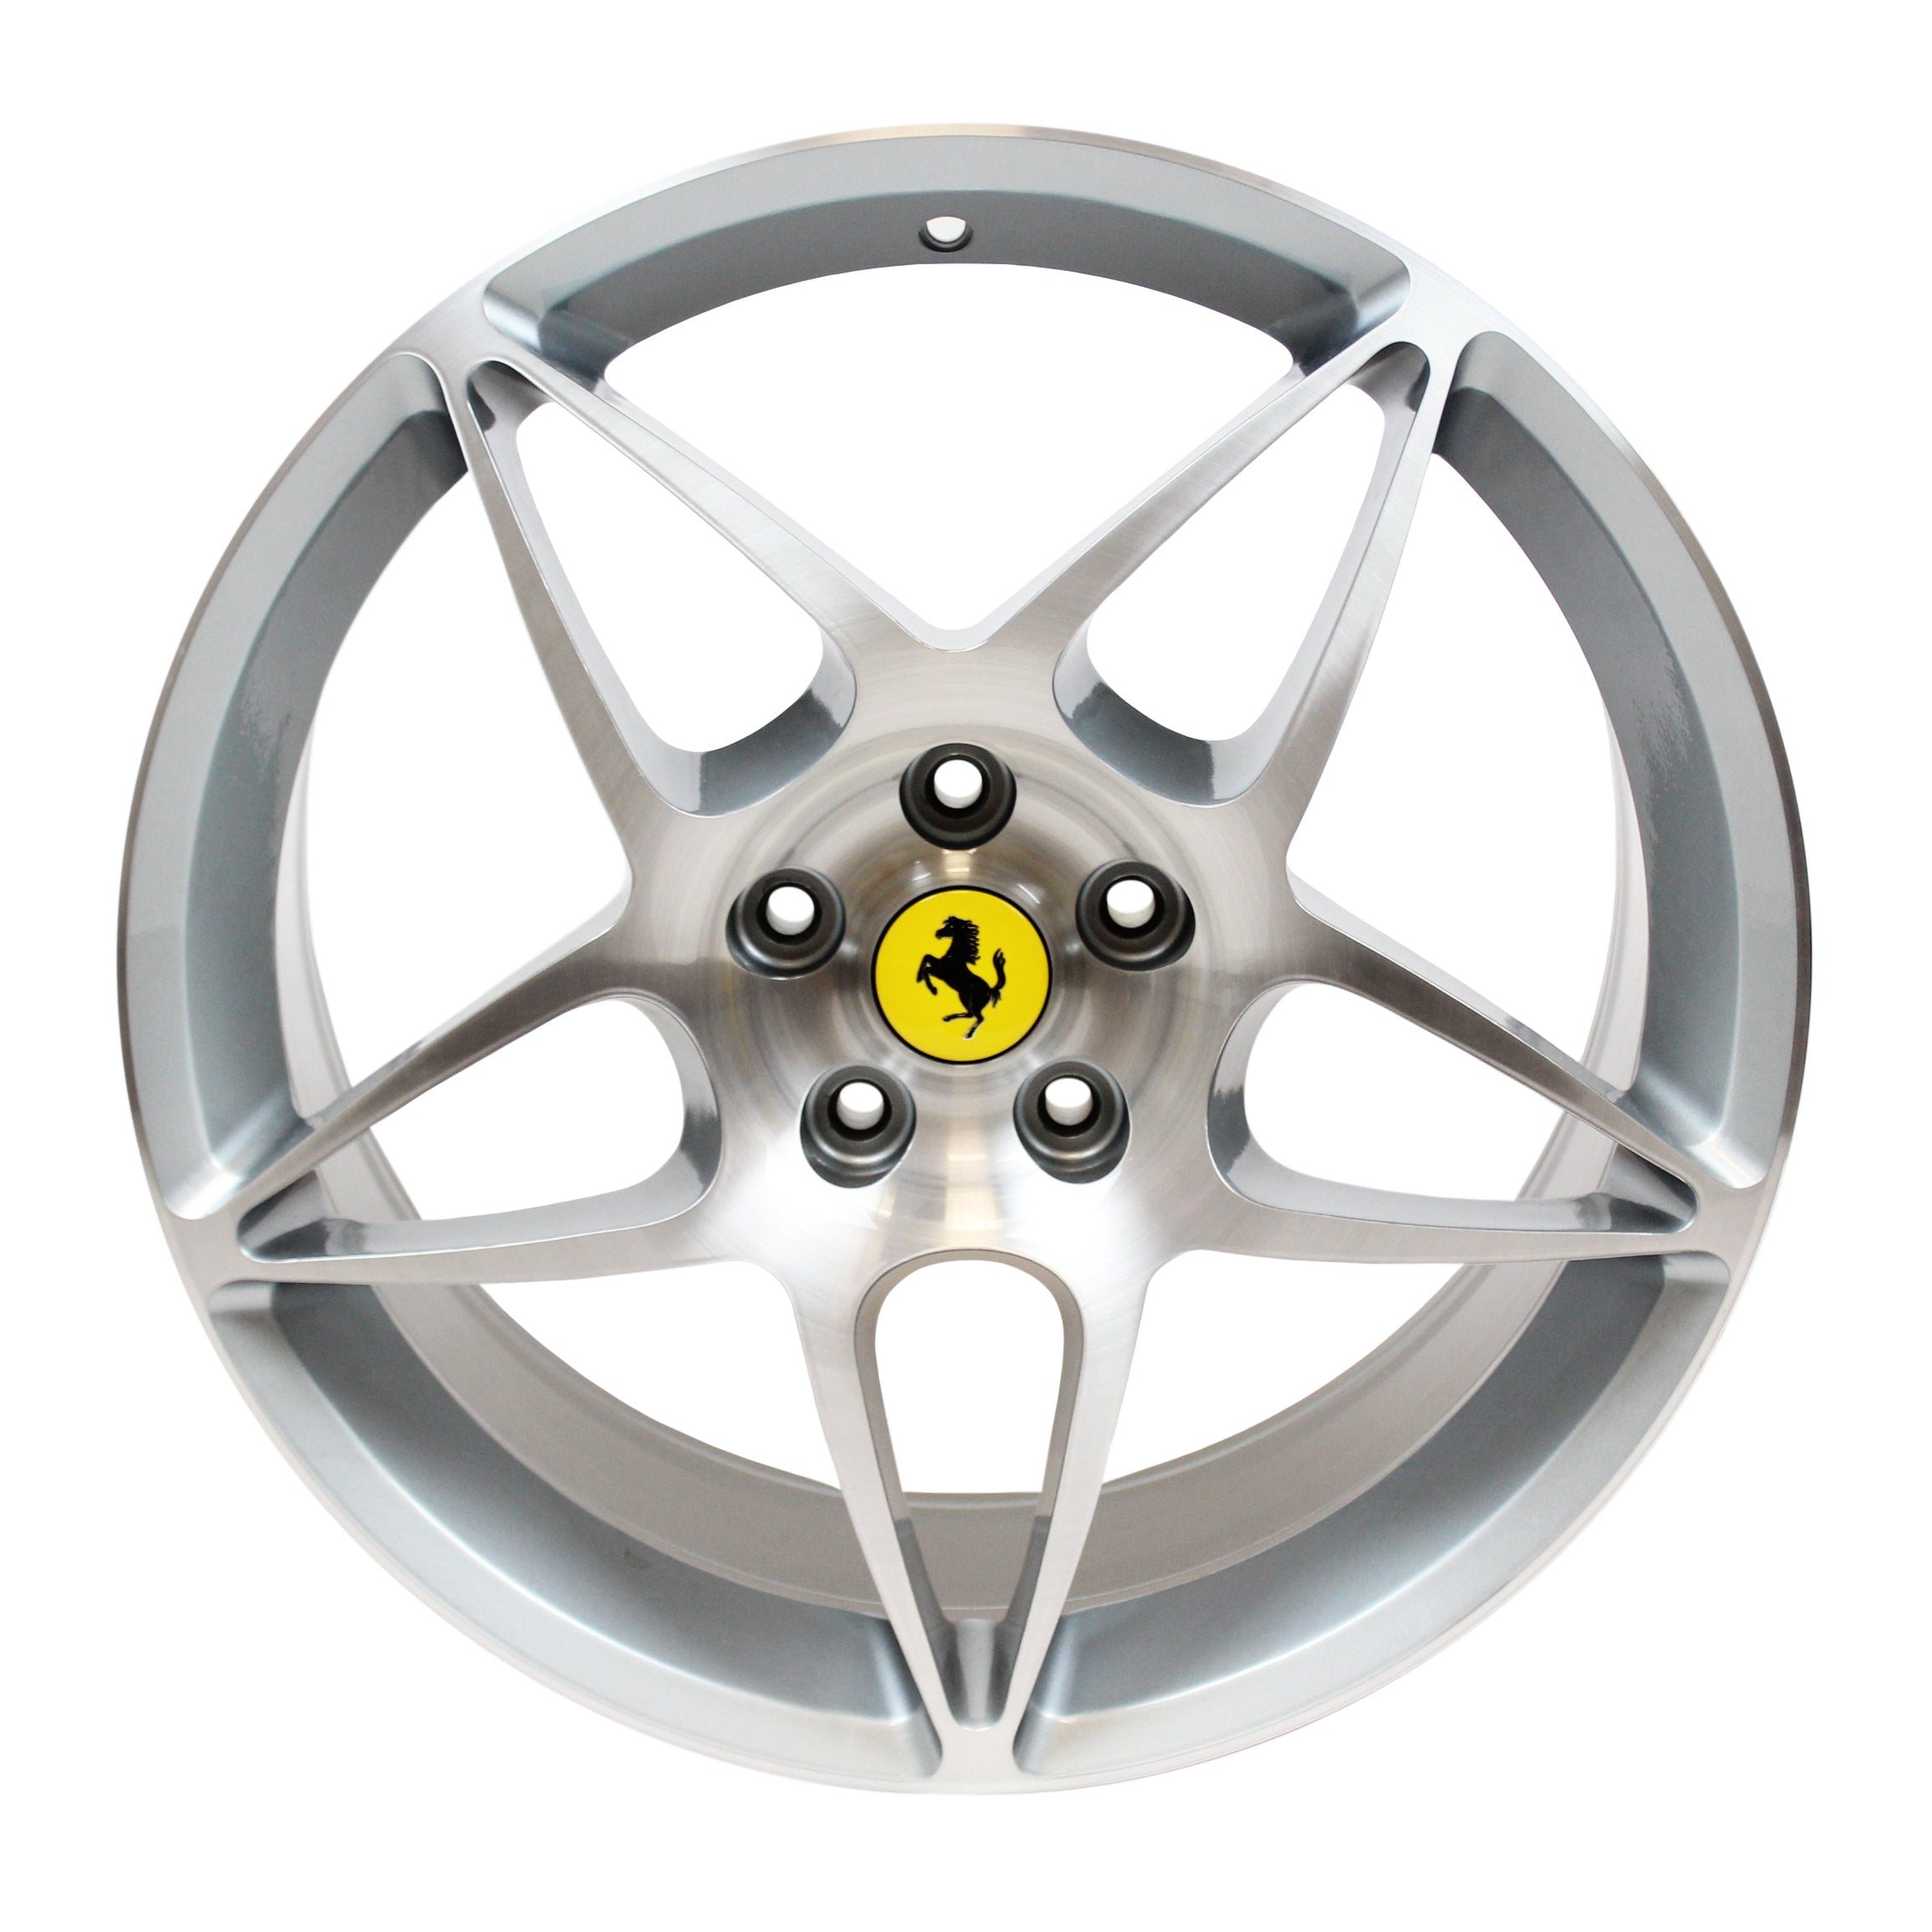 Ferrari California Rear Wheel 2010 - 2015